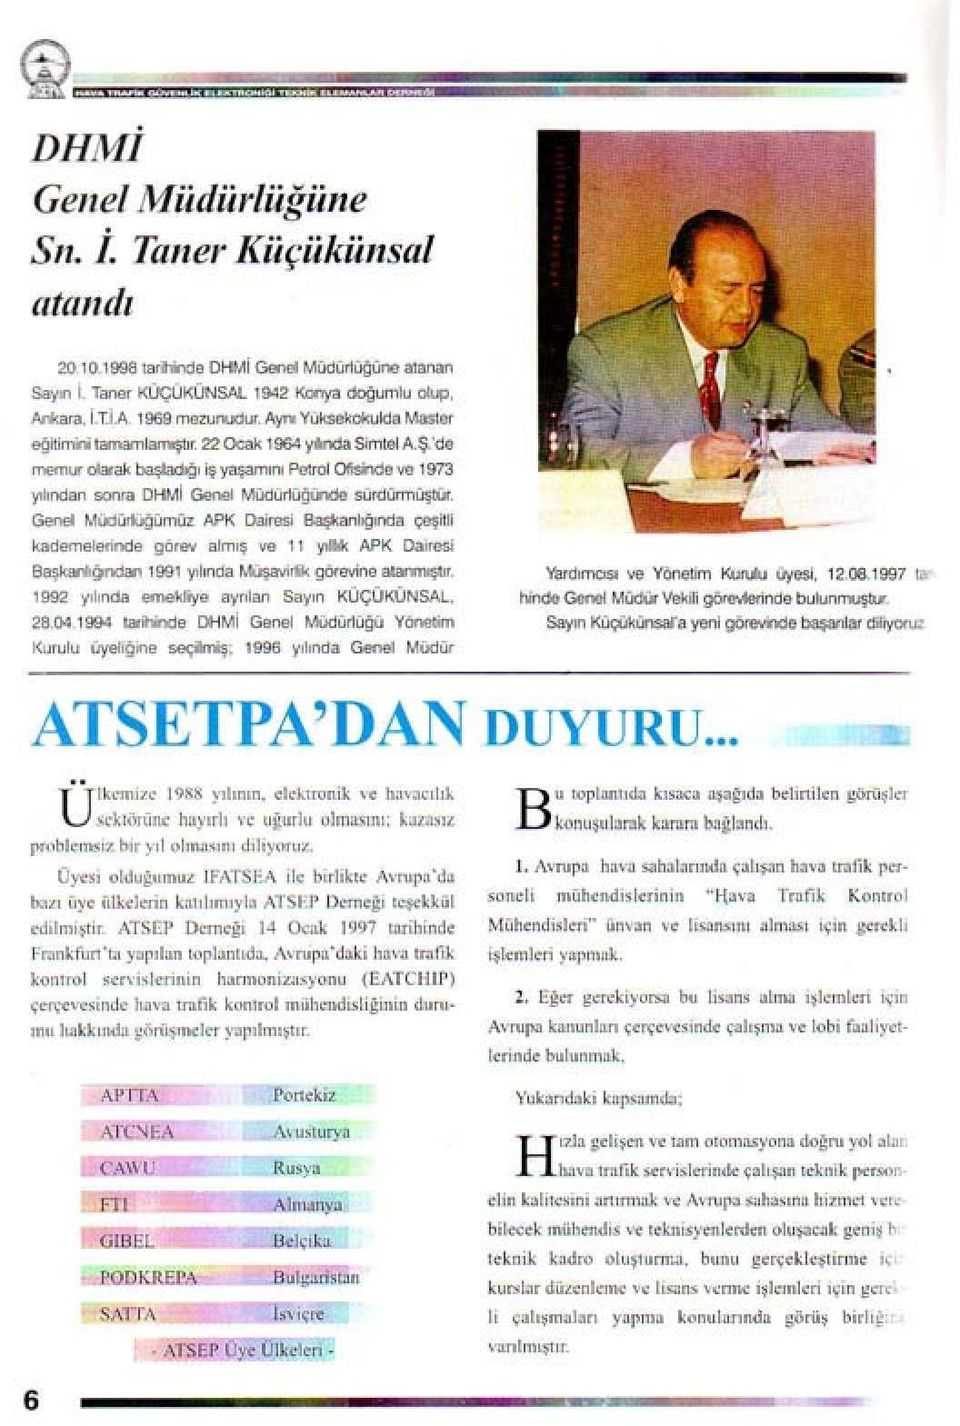 Genel Müdürlüğümüz APK Dairesi Başkanlığında çeşitli kademelerinde görevalmış ve 11 yıllık APK Dairesi Başkanlığından 1991 yılında Müşavirlik görevine atanmıştır.